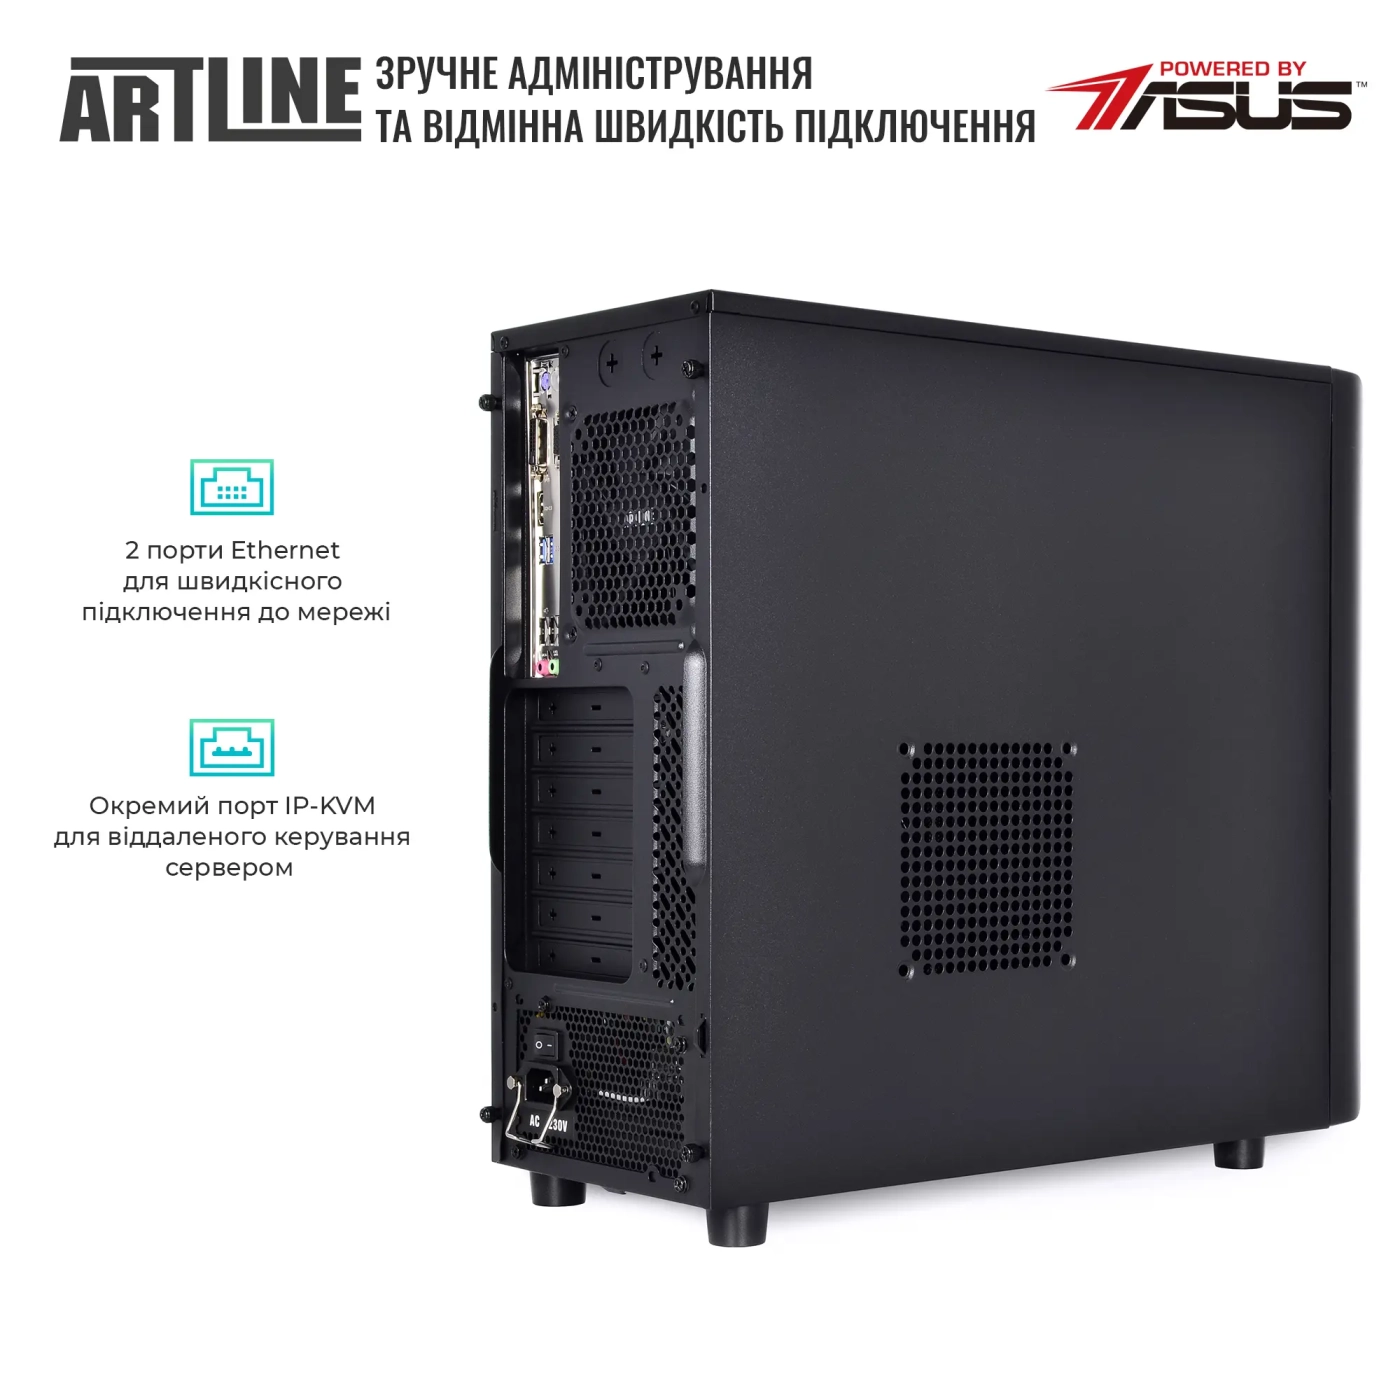 Купить Сервер ARTLINE Business T35v30 - фото 5